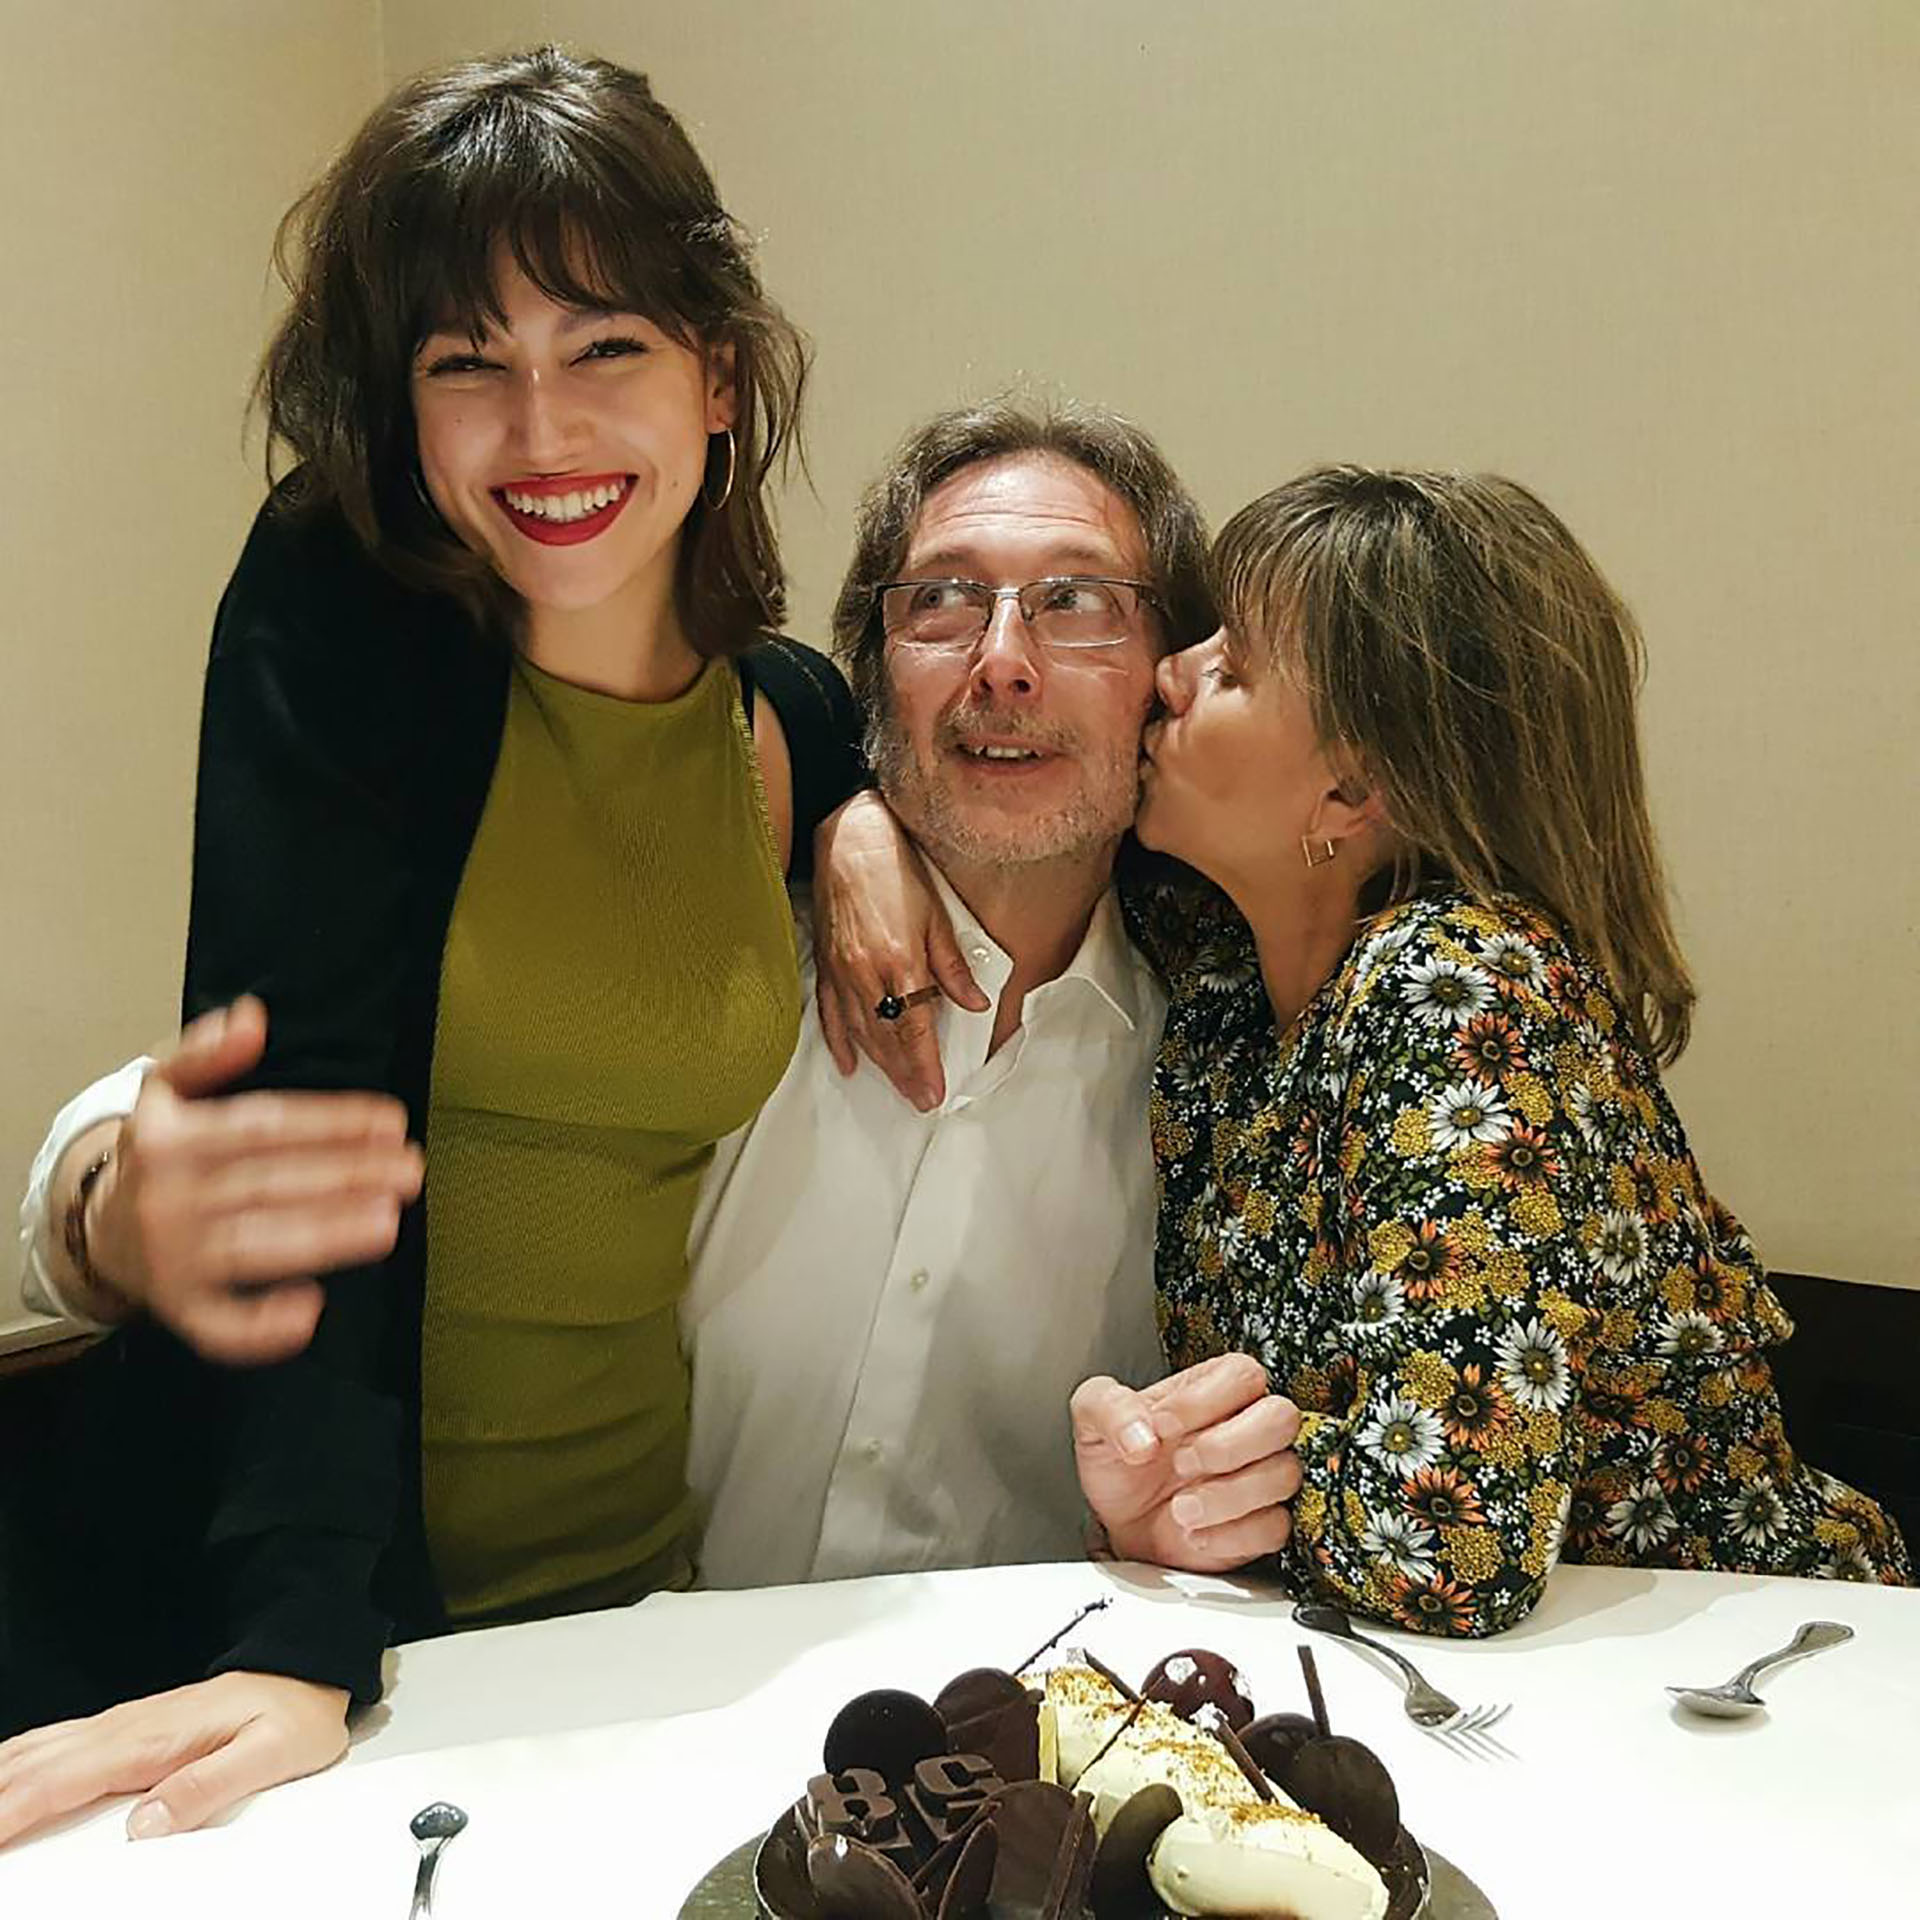 Úrsula Corbero con sus padres, Pedro y Esther (Foto: Instagram)